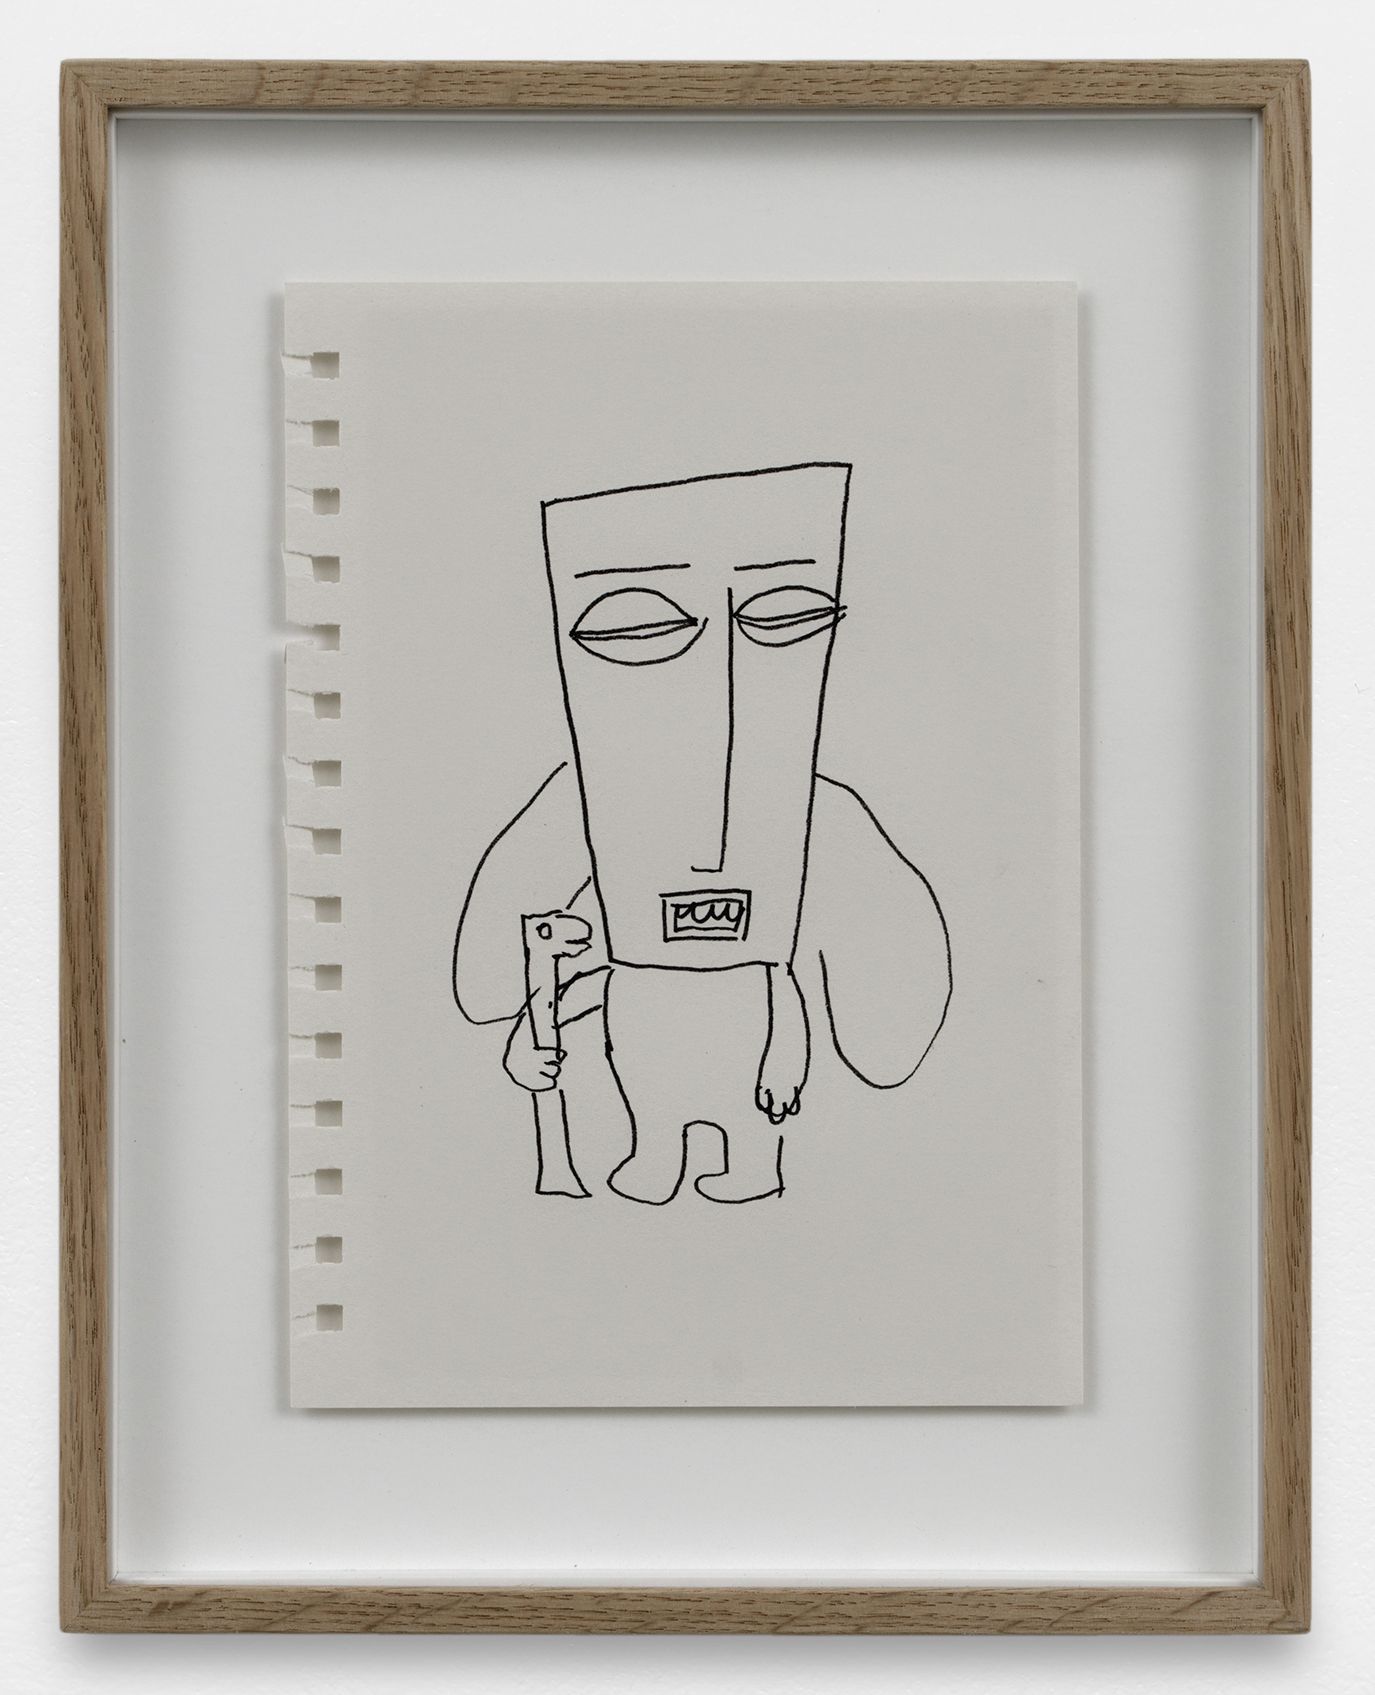 Stefan Rinck, Sans titre, 2021 Encre sur feuille de carnet de dessin21 × 14.8 cm / 8 2/8 × 58 2/8 in. | 30 × 23.4 × 3 cm / 11 6/8 × 9 2/8 × 1 1/8 in. (encadré/framed)